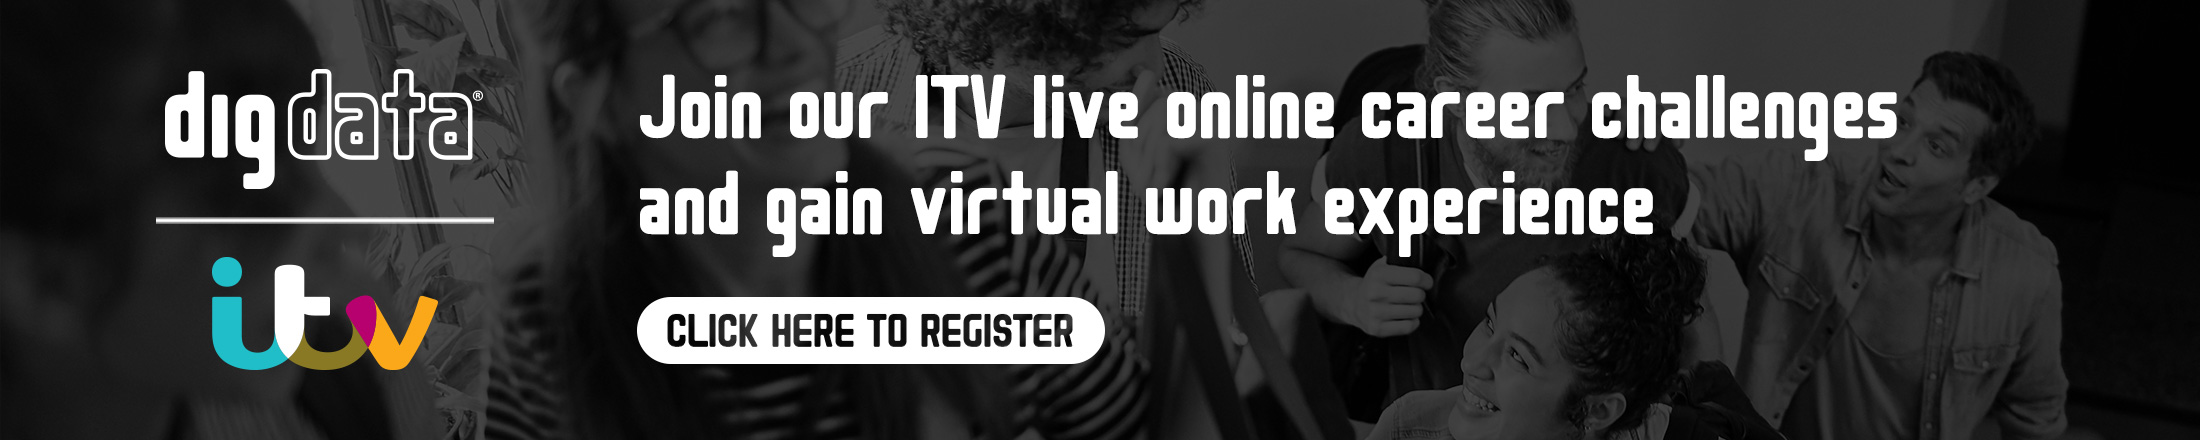 ITV Career Challenge Register Banner